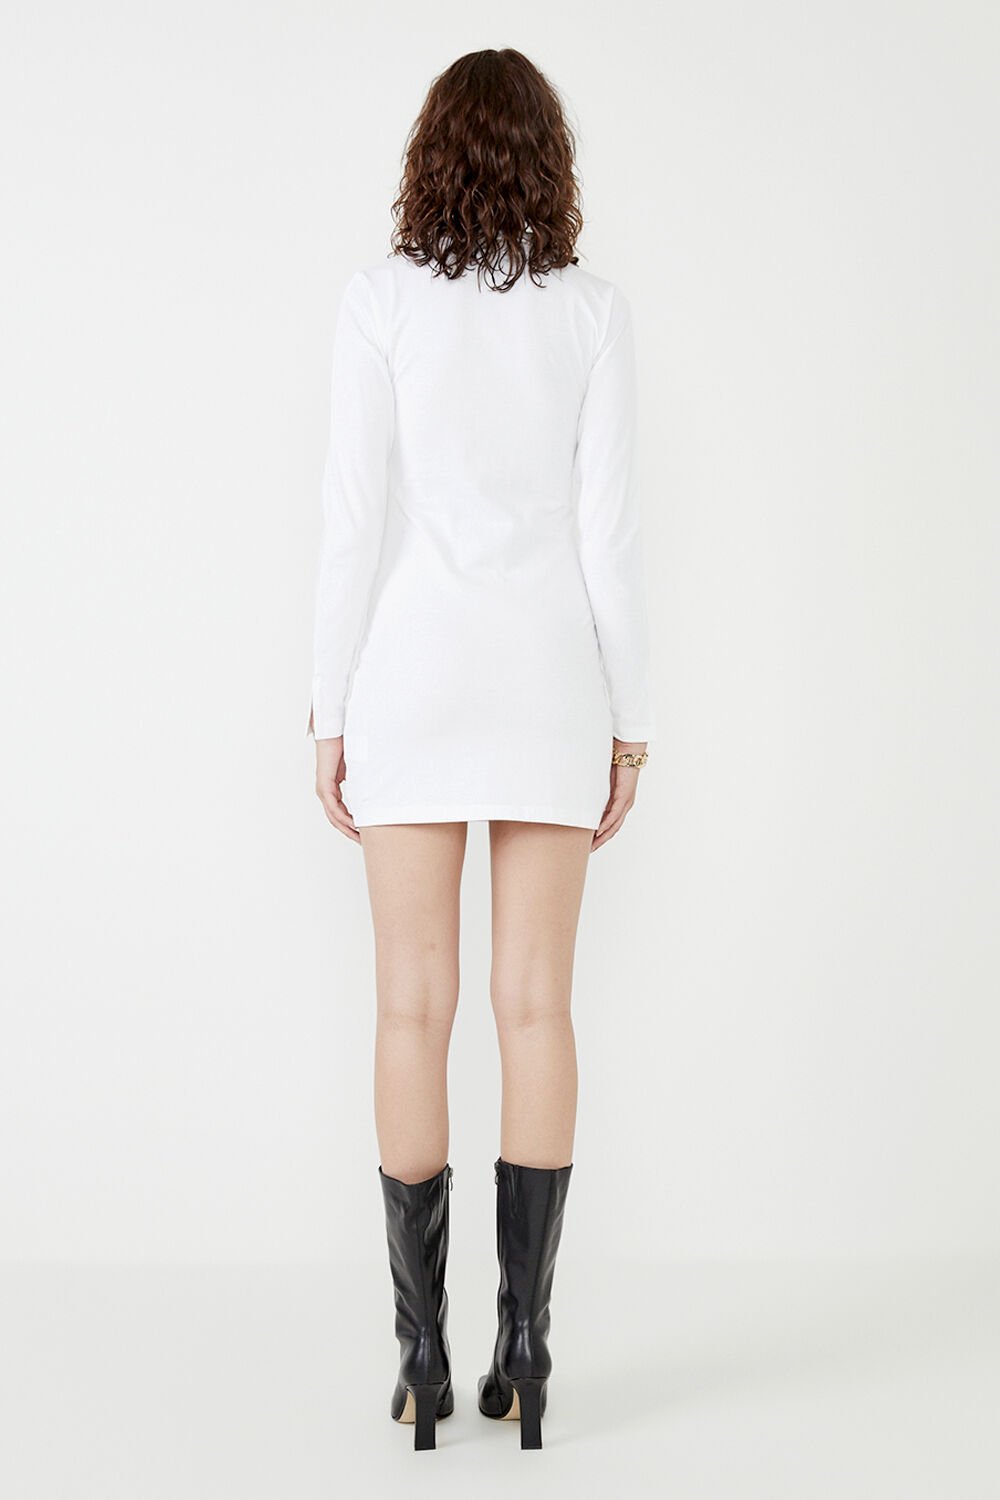 MARNIE COLLARED ORGANIC MINI DRESS in colour BRIGHT WHITE